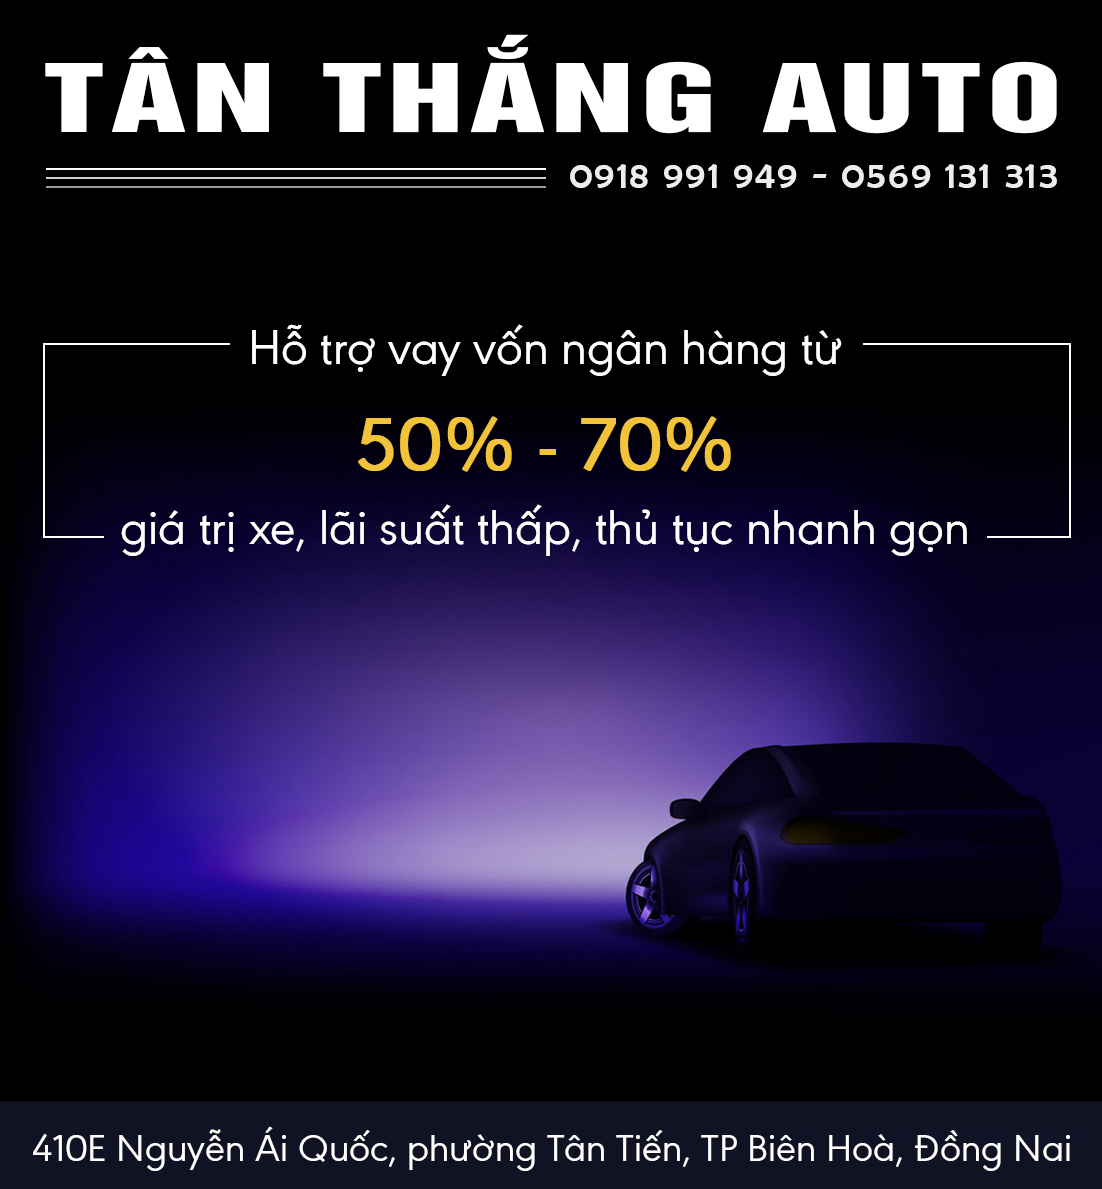 Tan Thang Auto